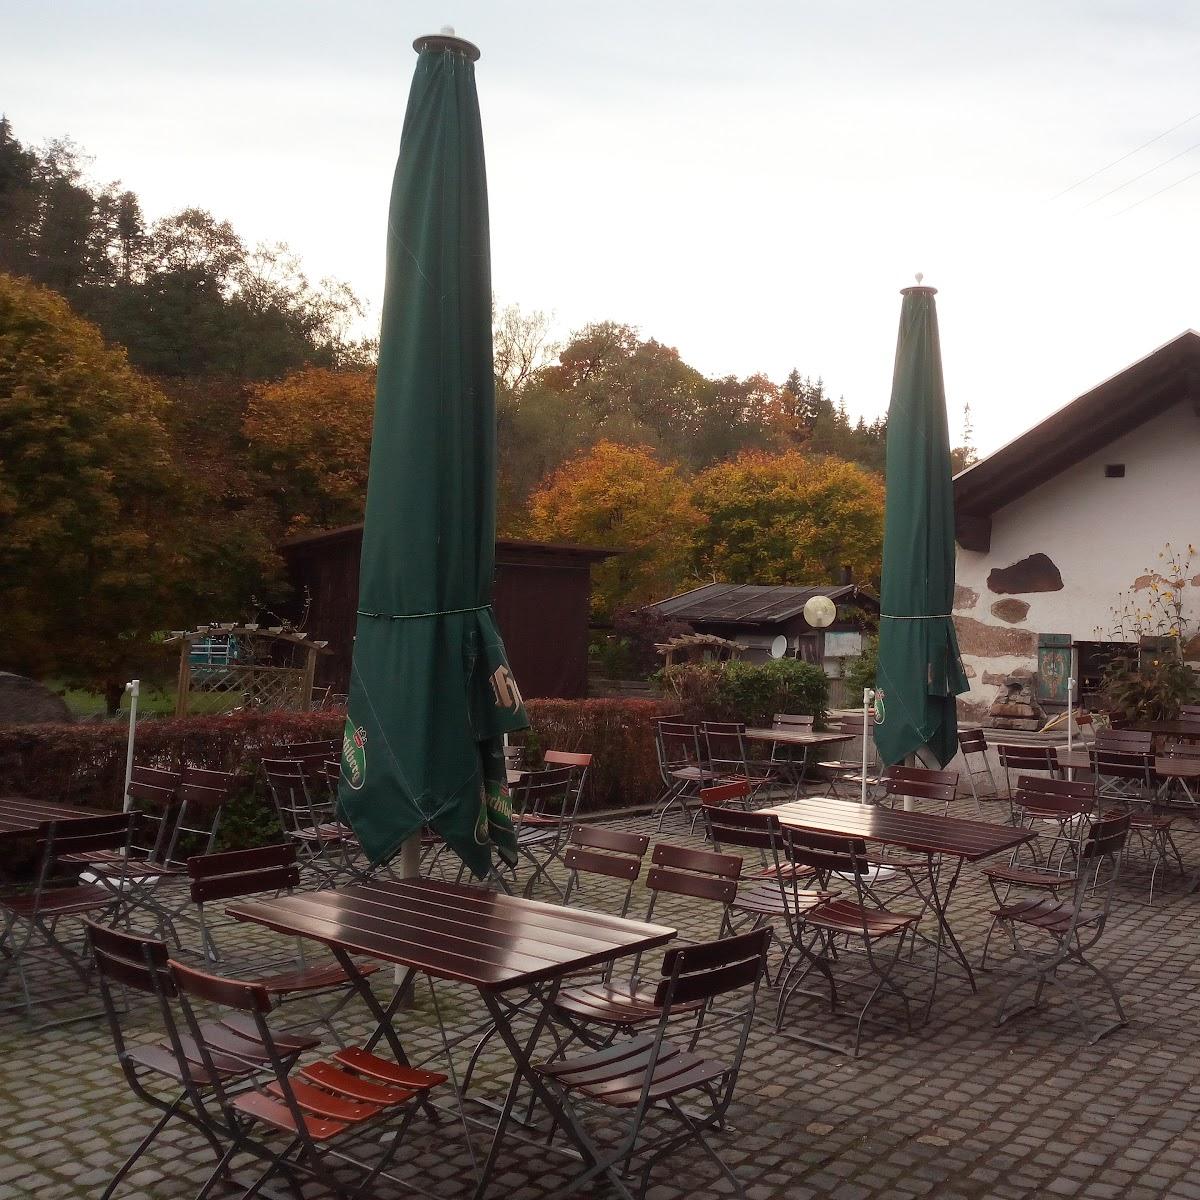 Restaurant "Schrottenbaummühle" in Fürsteneck